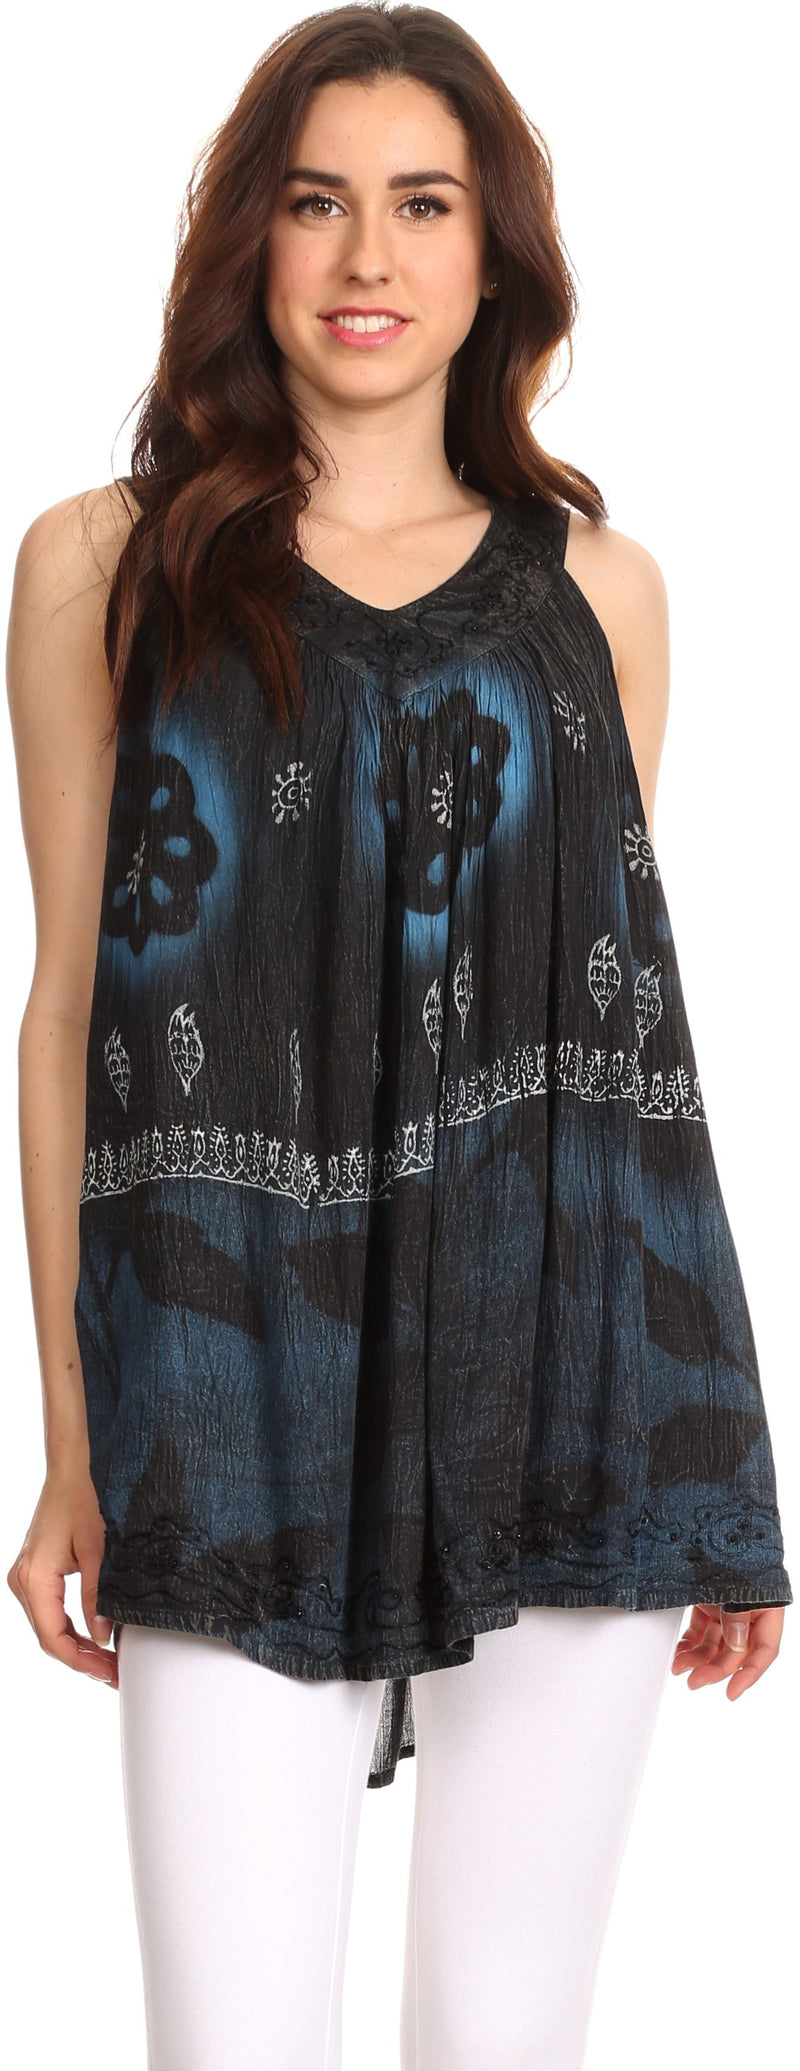 Sakkas Goregianna Long Embroidered Sequin Printed Batik Beaded Tank Top Blouse Top